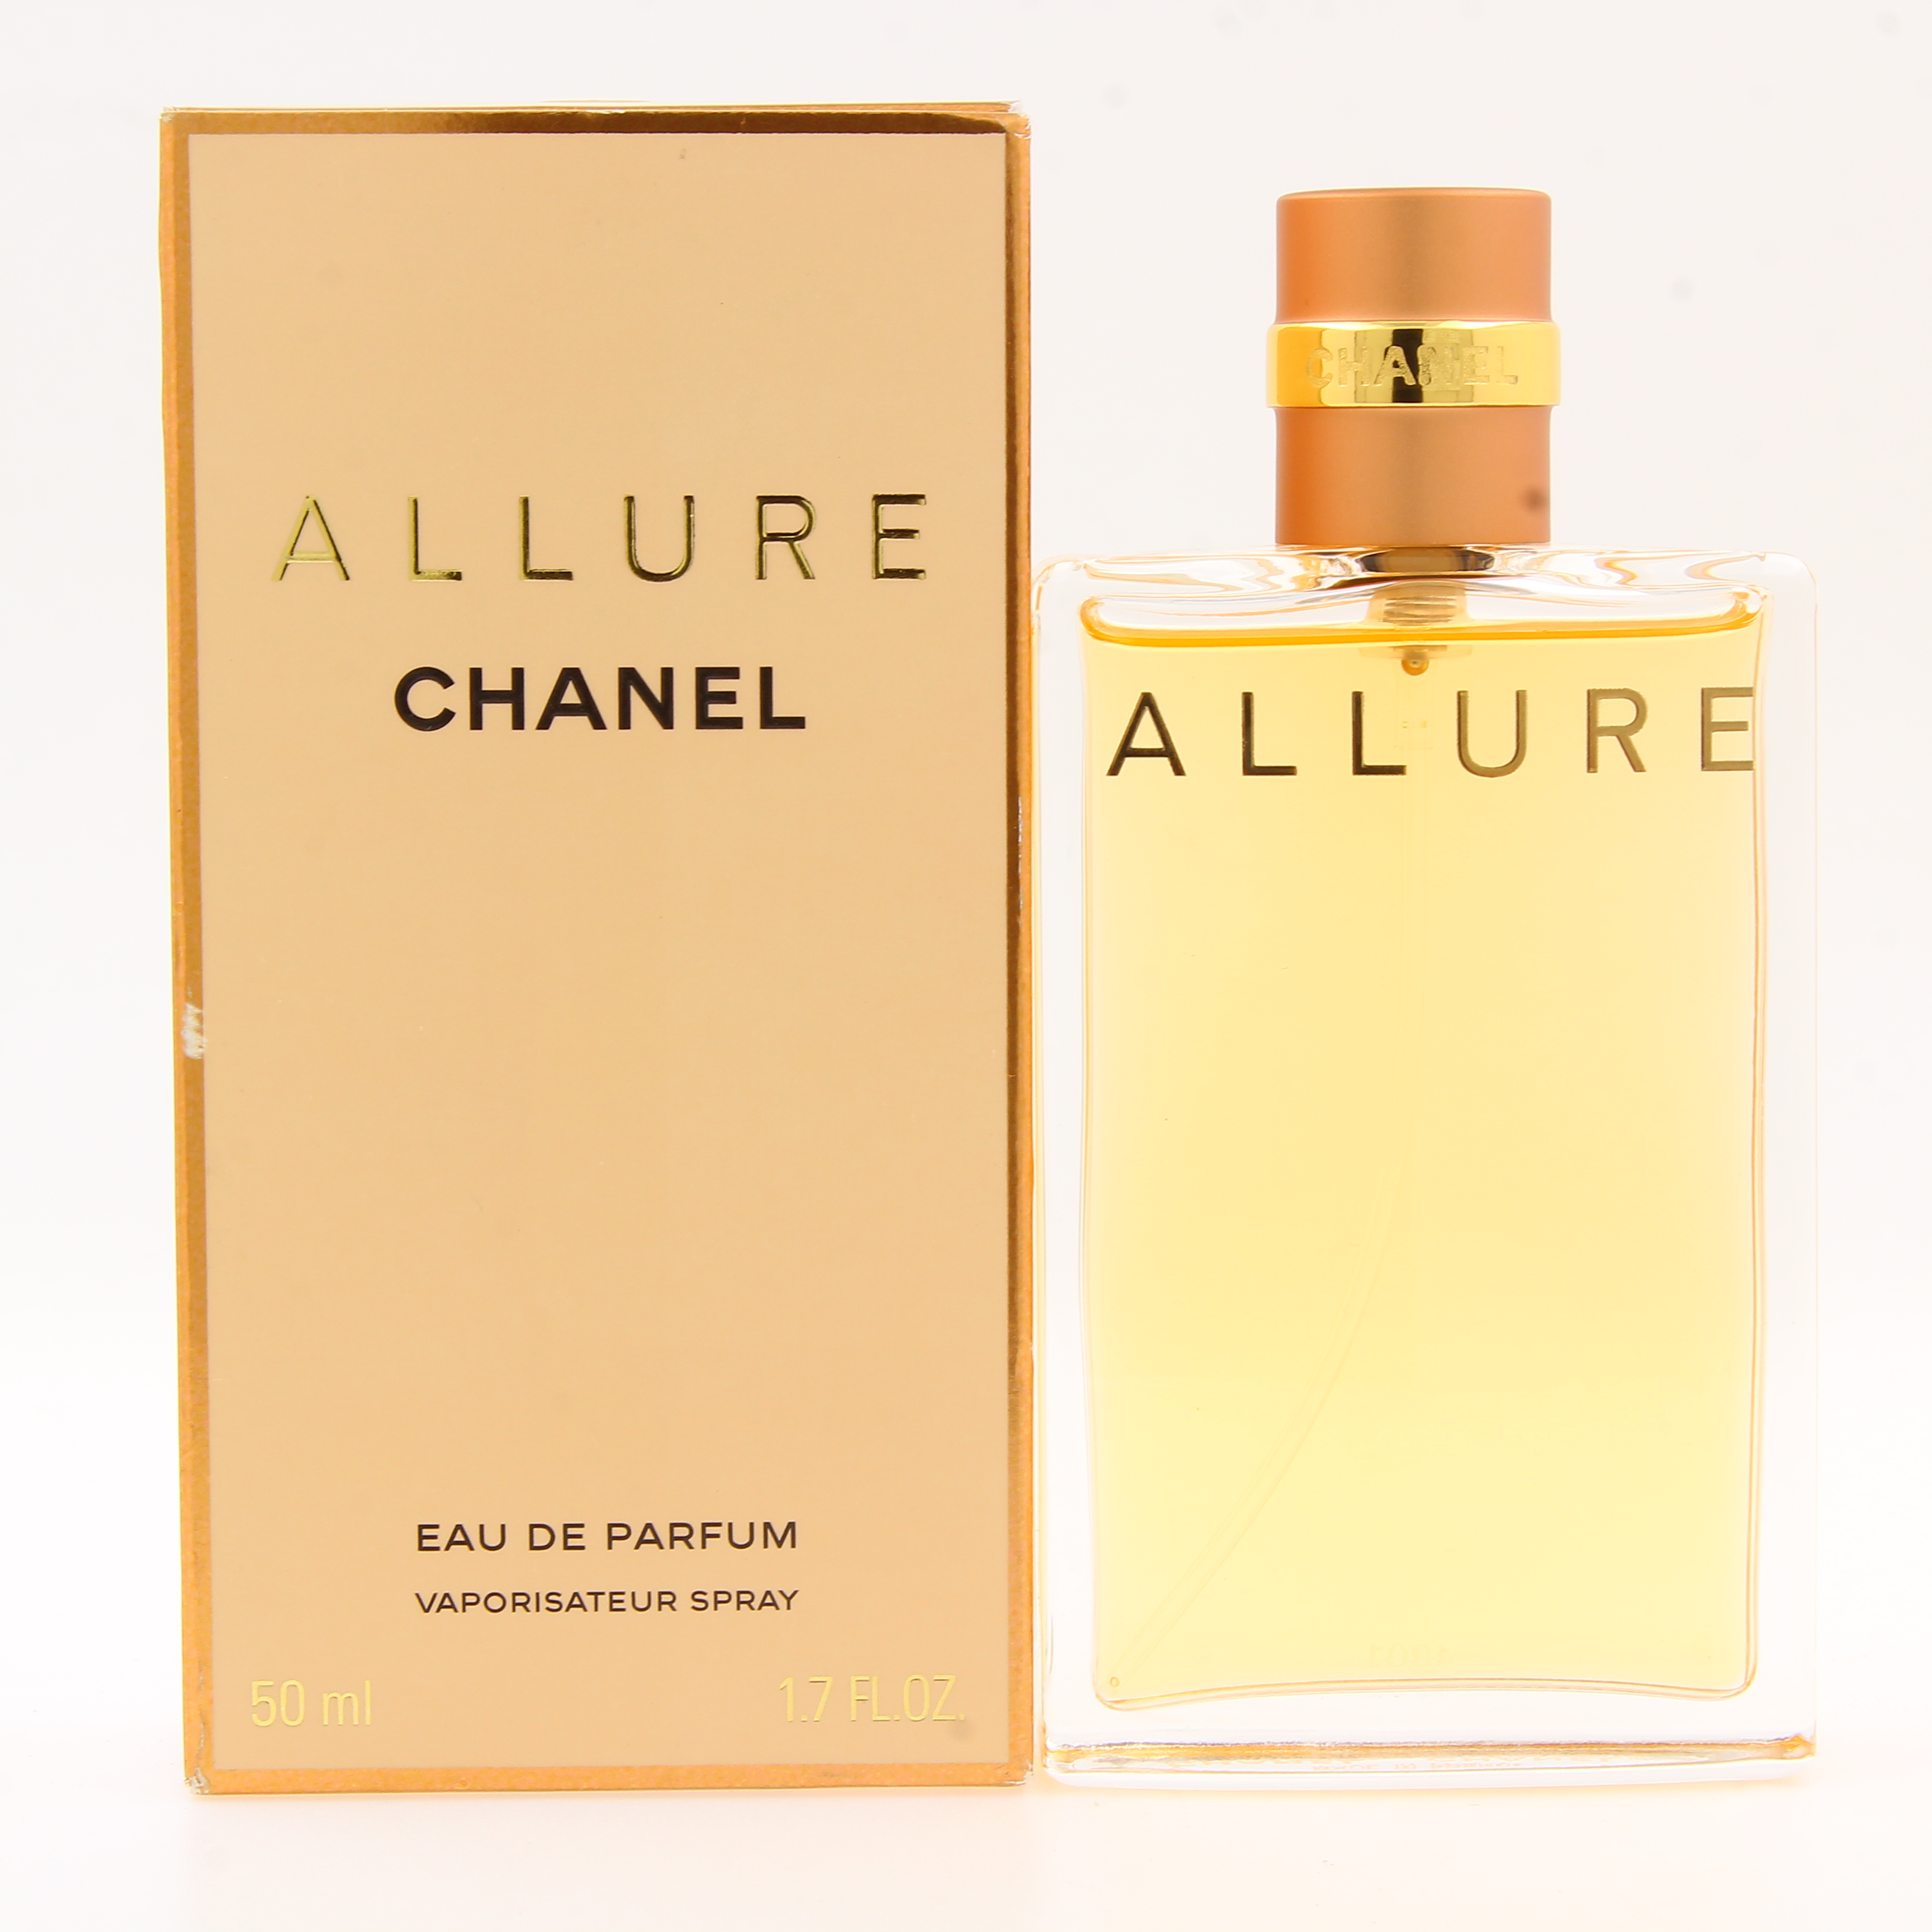 Allure by Chanel Women's Eau de Parfum 50mL/ 1.7 Fl. Oz - NIB - M Couture